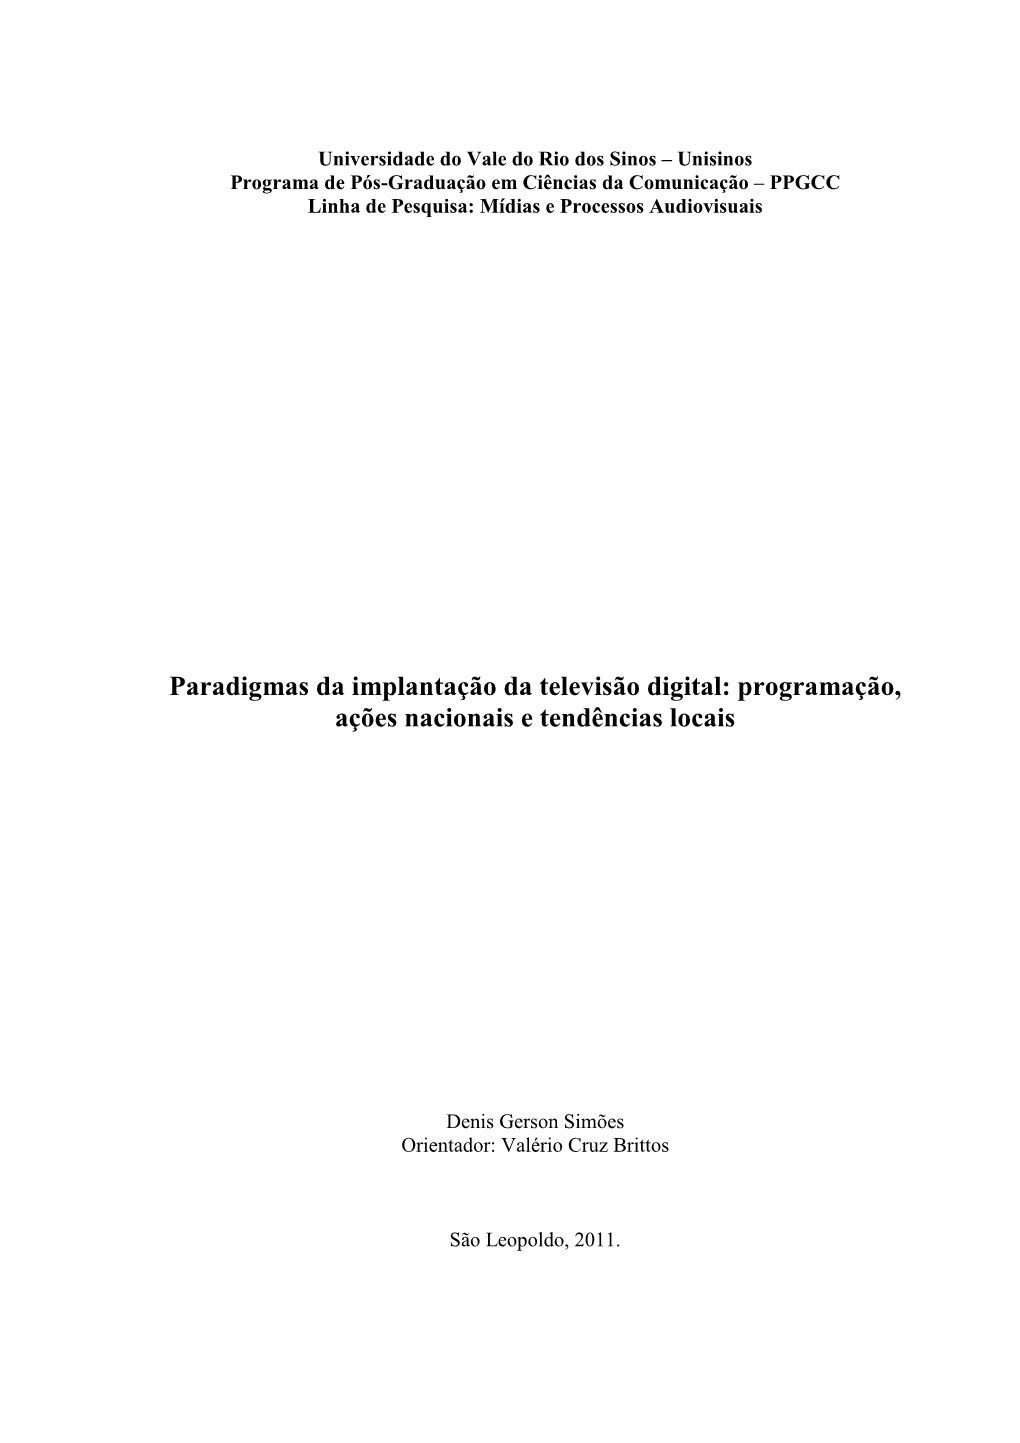 Paradigmas Da Implantação Da Televisão Digital: Programação, Ações Nacionais E Tendências Locais